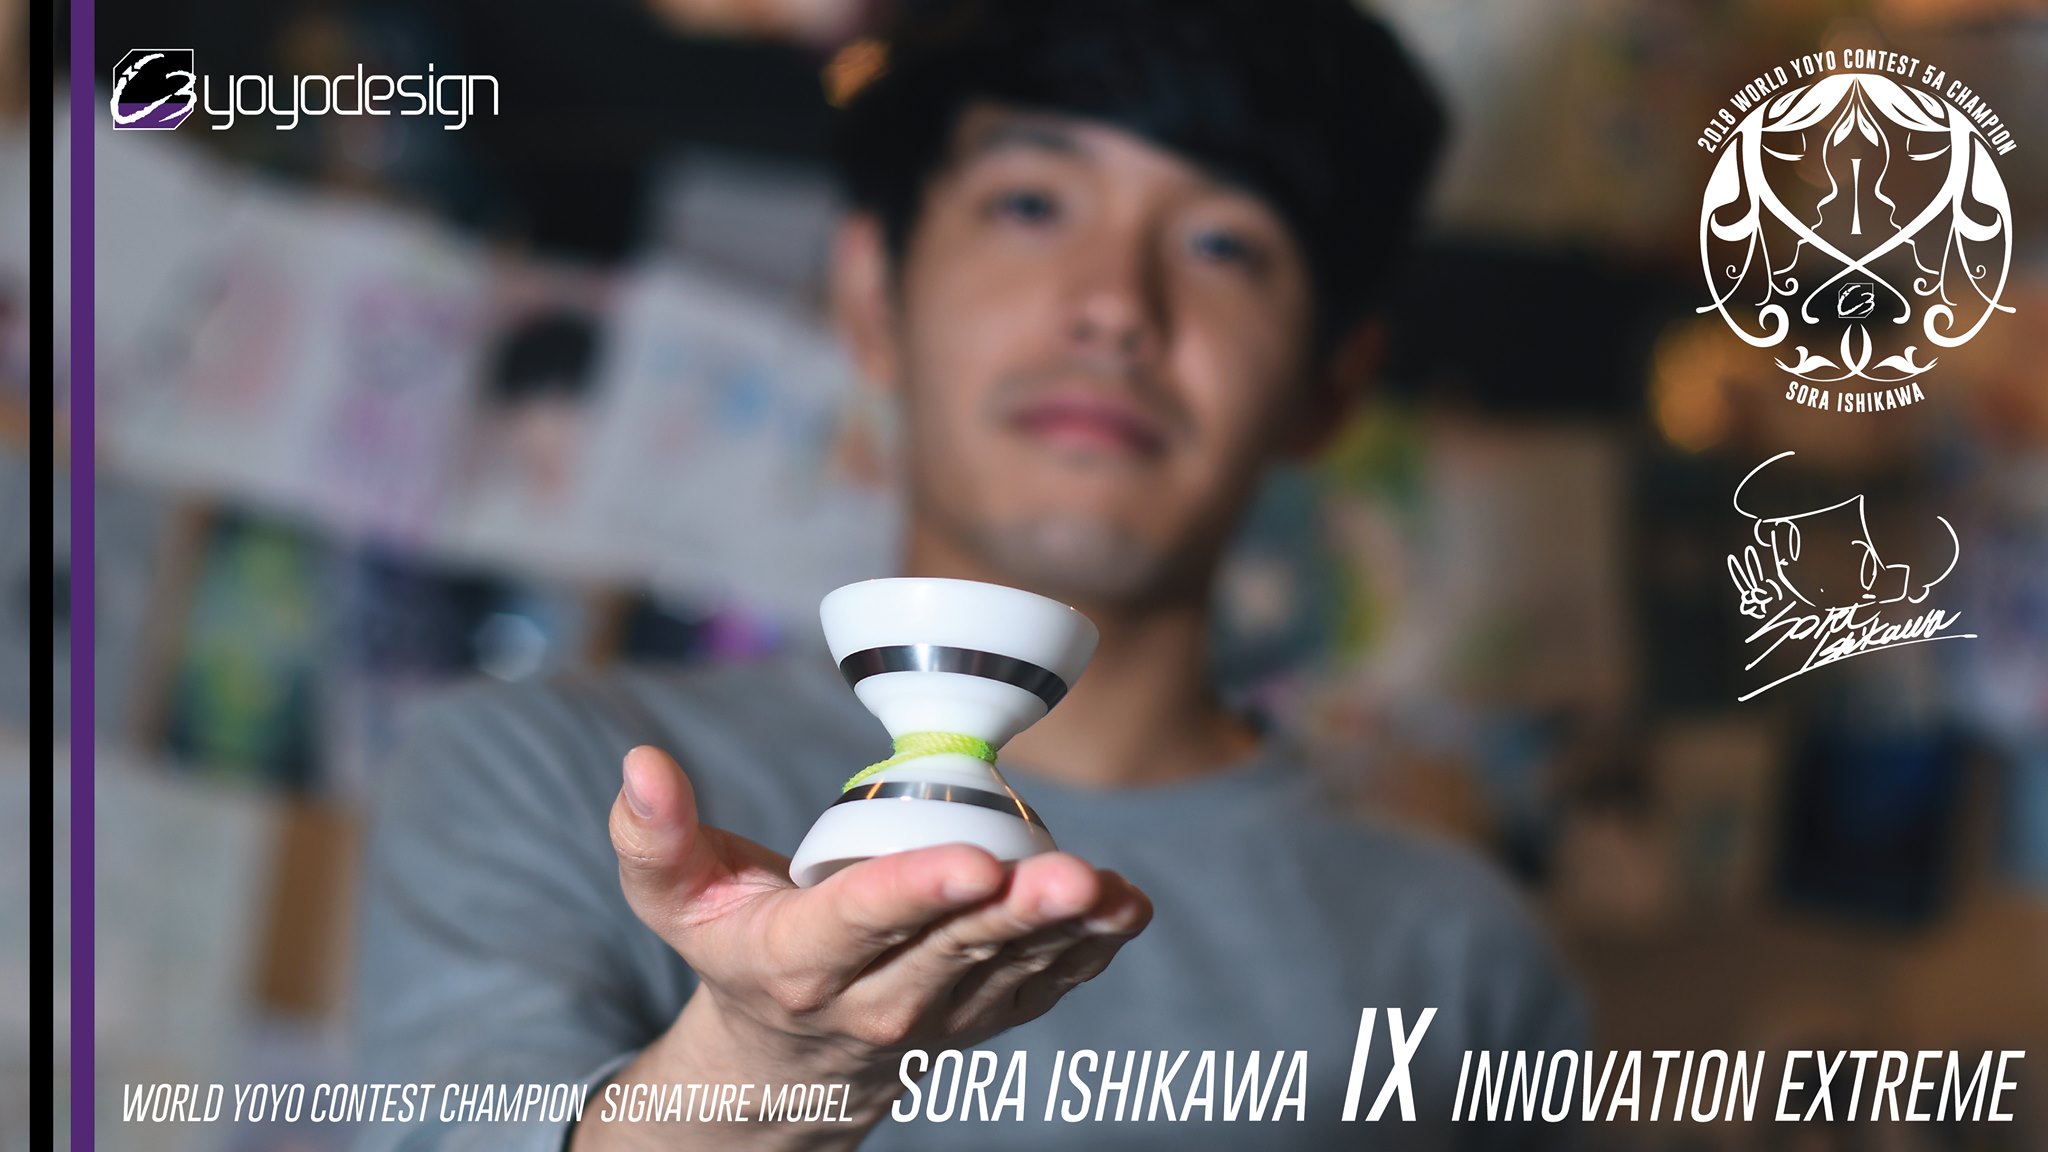 ハイエンドモデル “IX (Innovation eXtreme)” | C3yoyodesign JAPAN